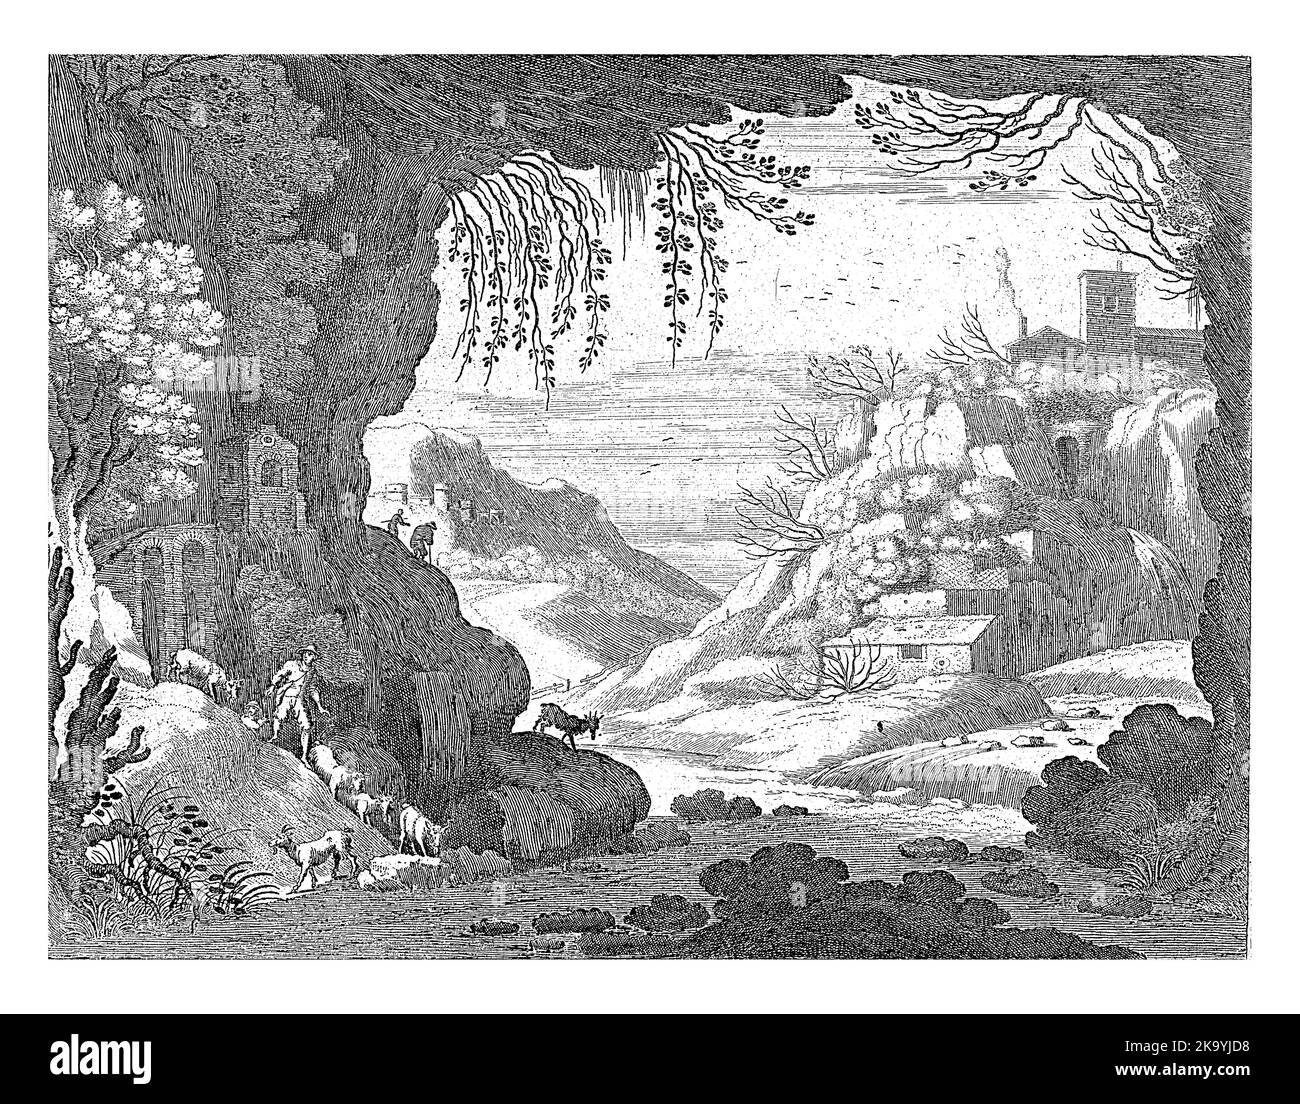 Da una grotta, in cui scorre un fiume, una vista di un paesaggio montano. A sinistra sulla riva due pastori con una mandria di capre. Foto Stock